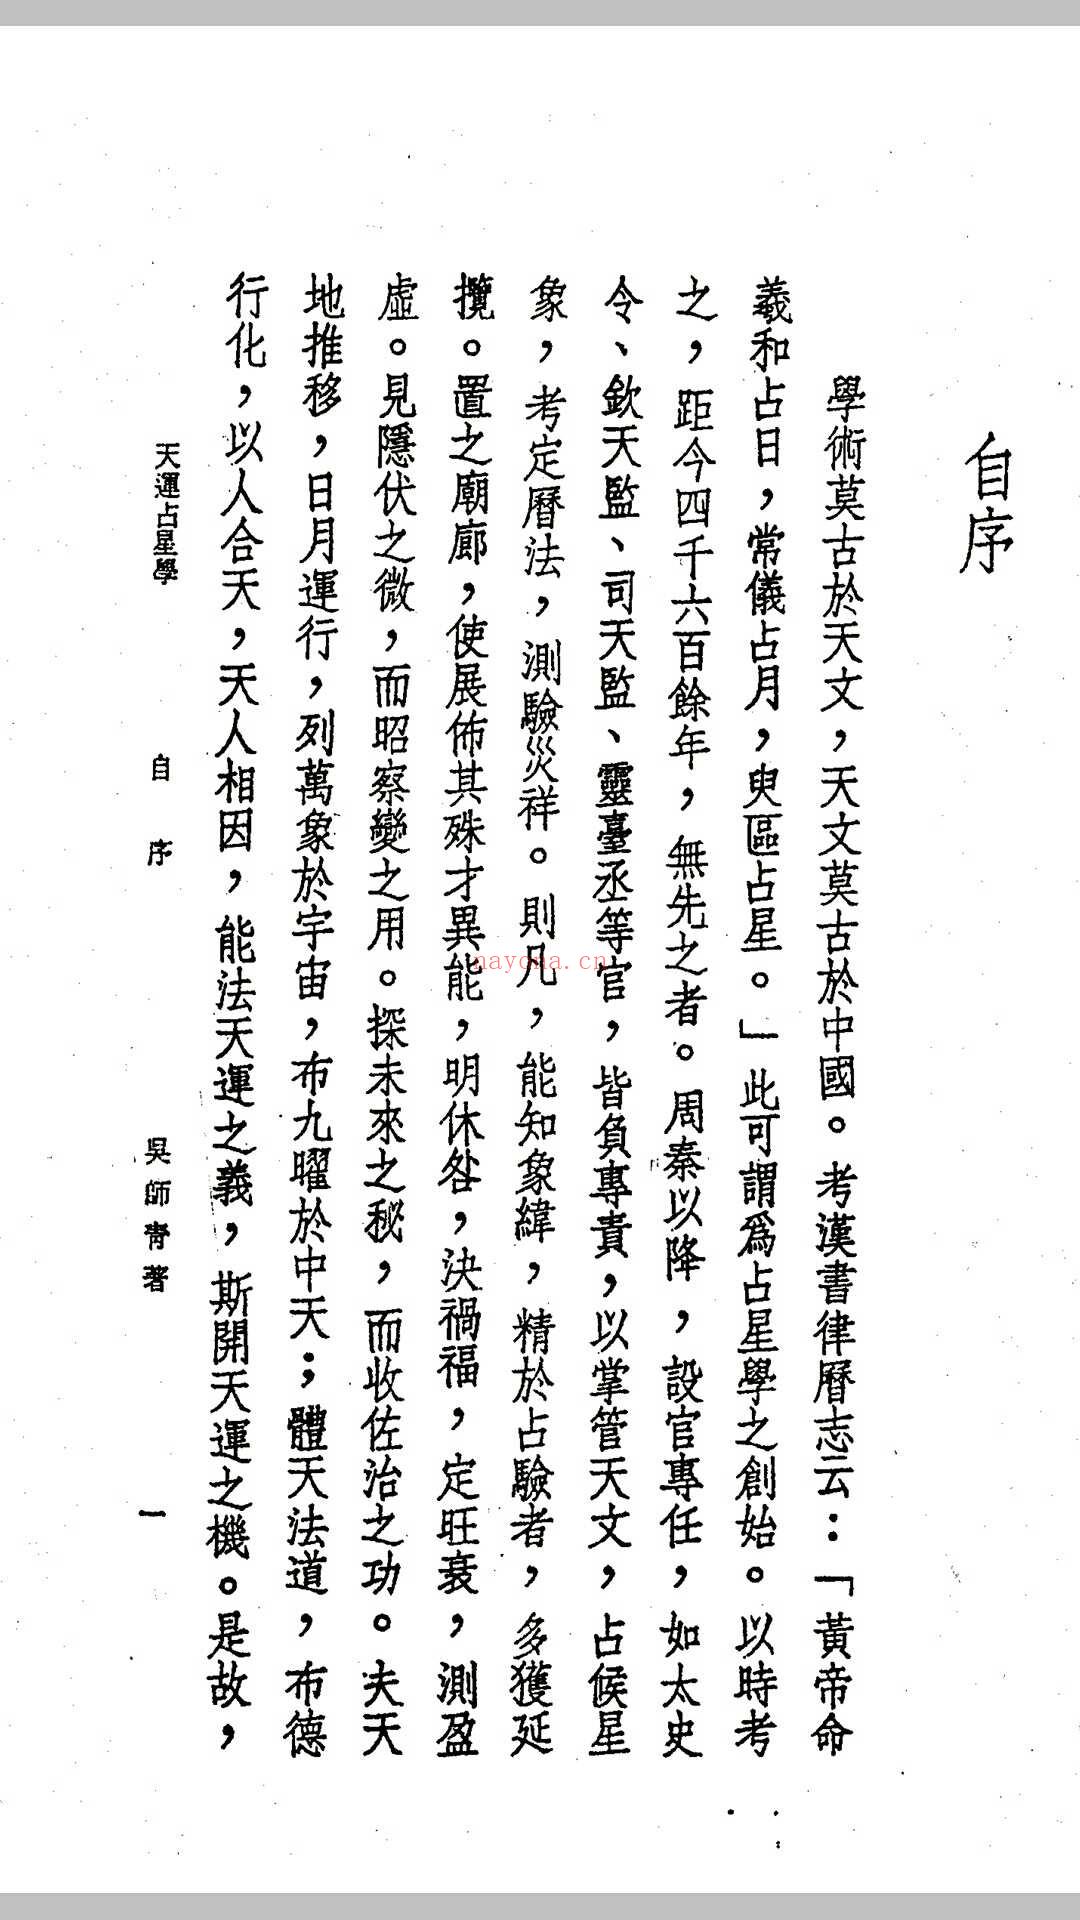 吴师青-天运占星学 (吴师青天运占星学占星案例)